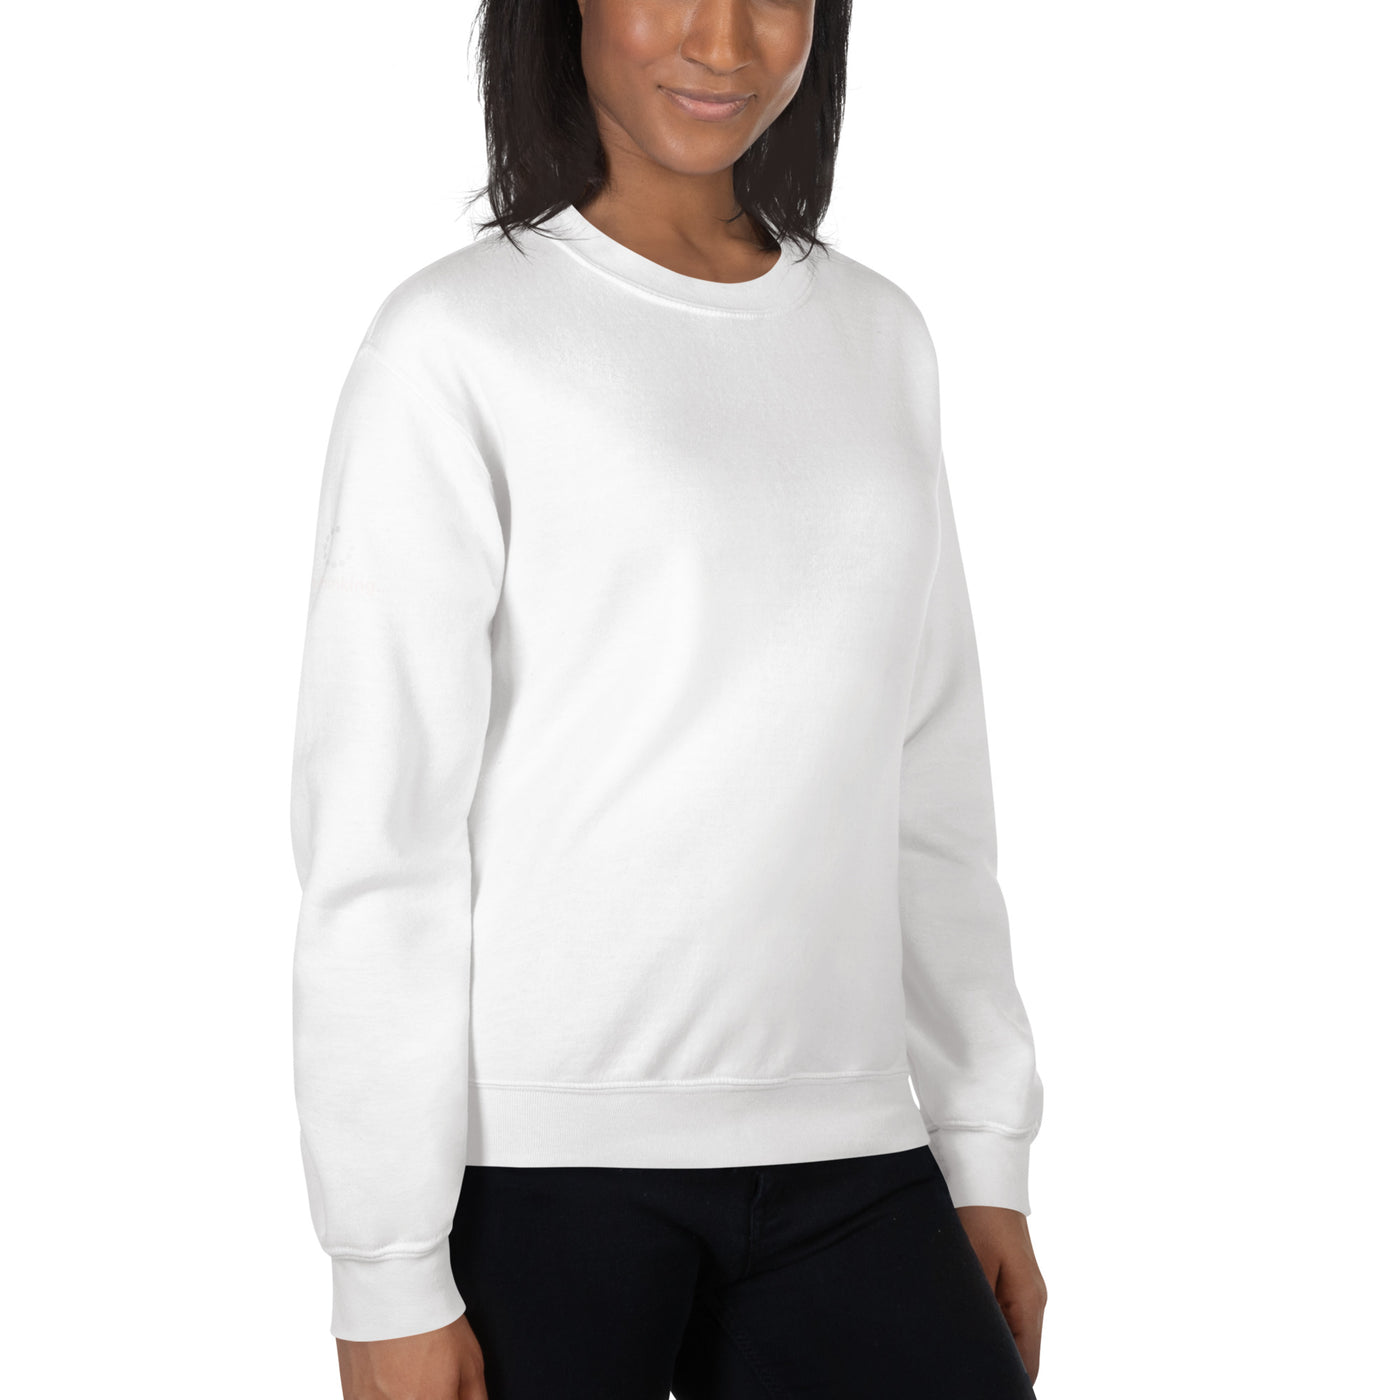 I'm thinking - Unisex Sweatshirt (back print)